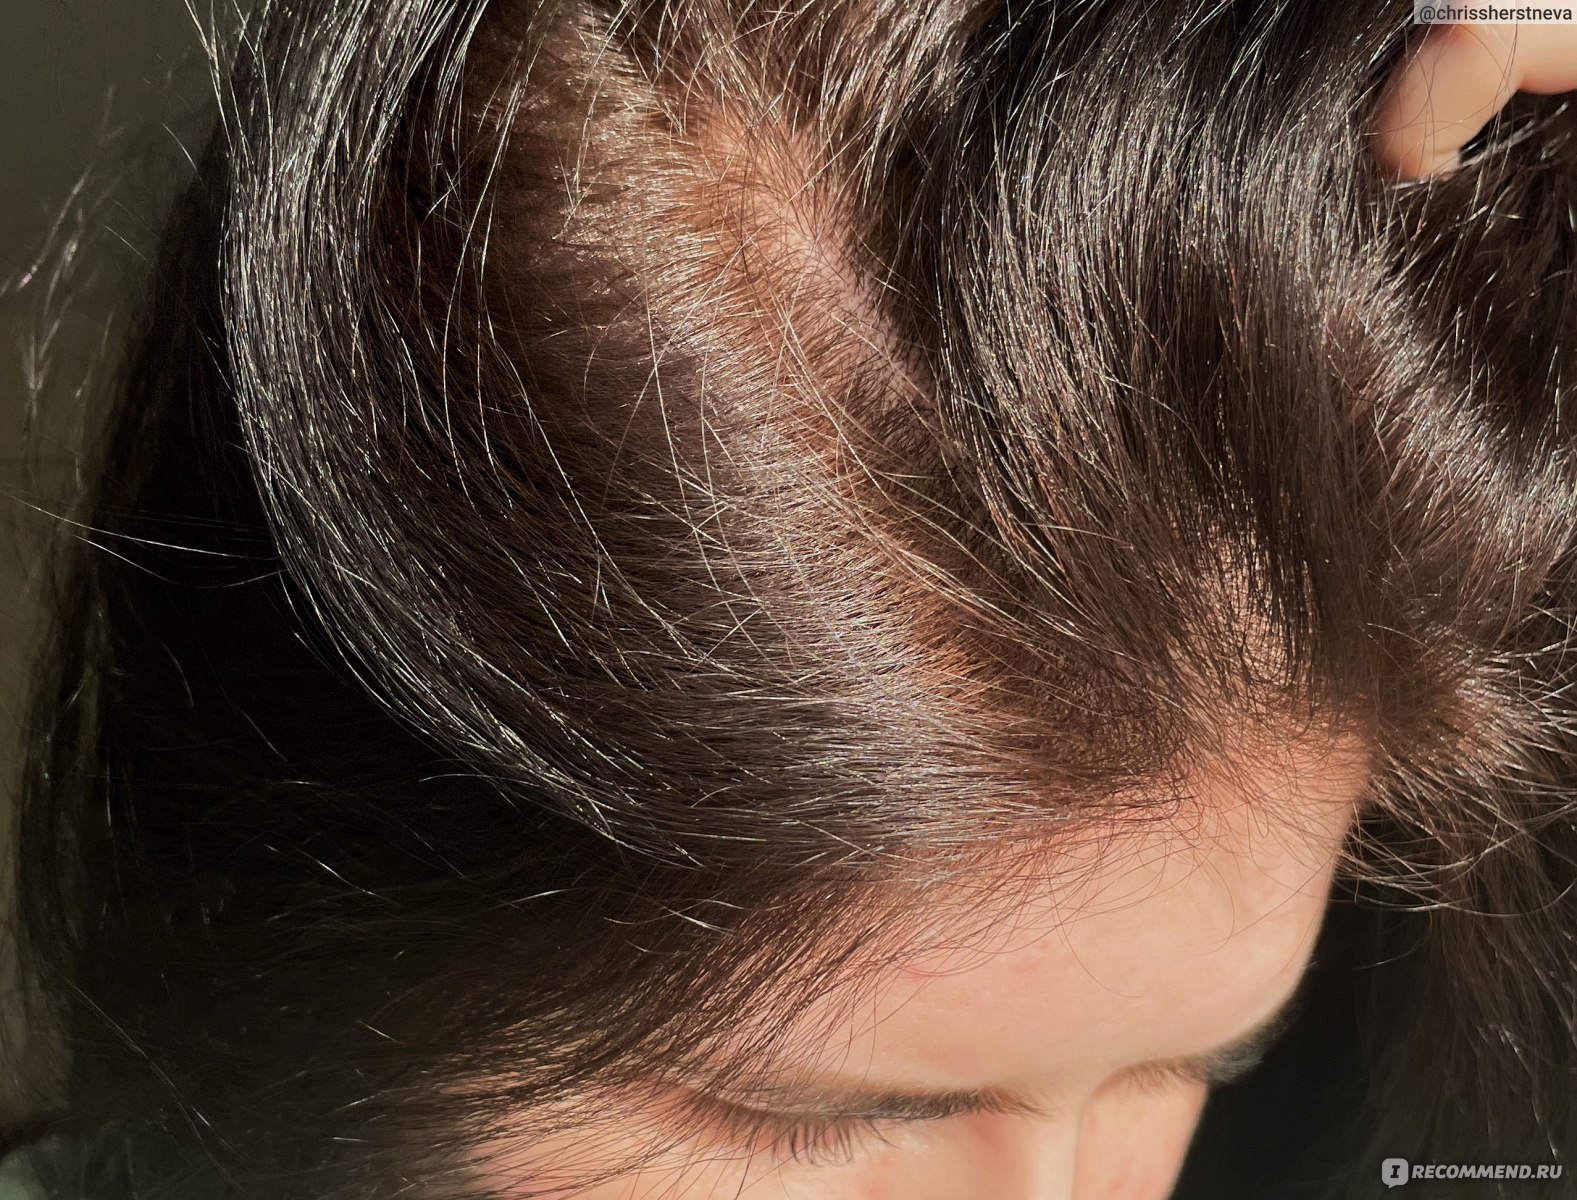 Шампунь Faberlic Moroszka универсальный для всех типов волос - отзыв 